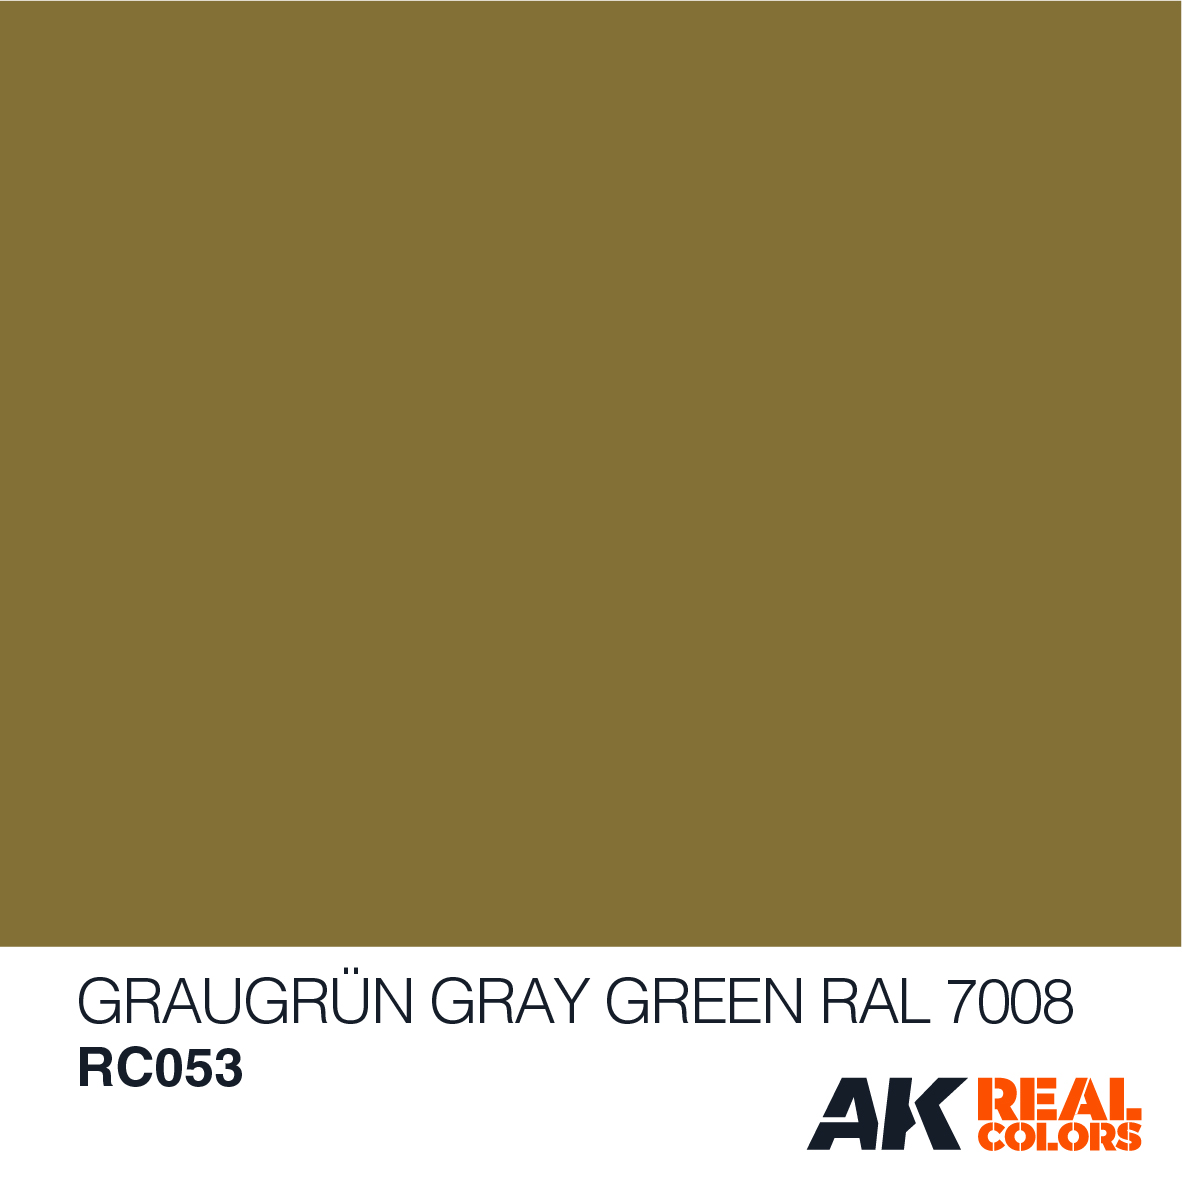 Graugrün – Gray Green RAL 7008